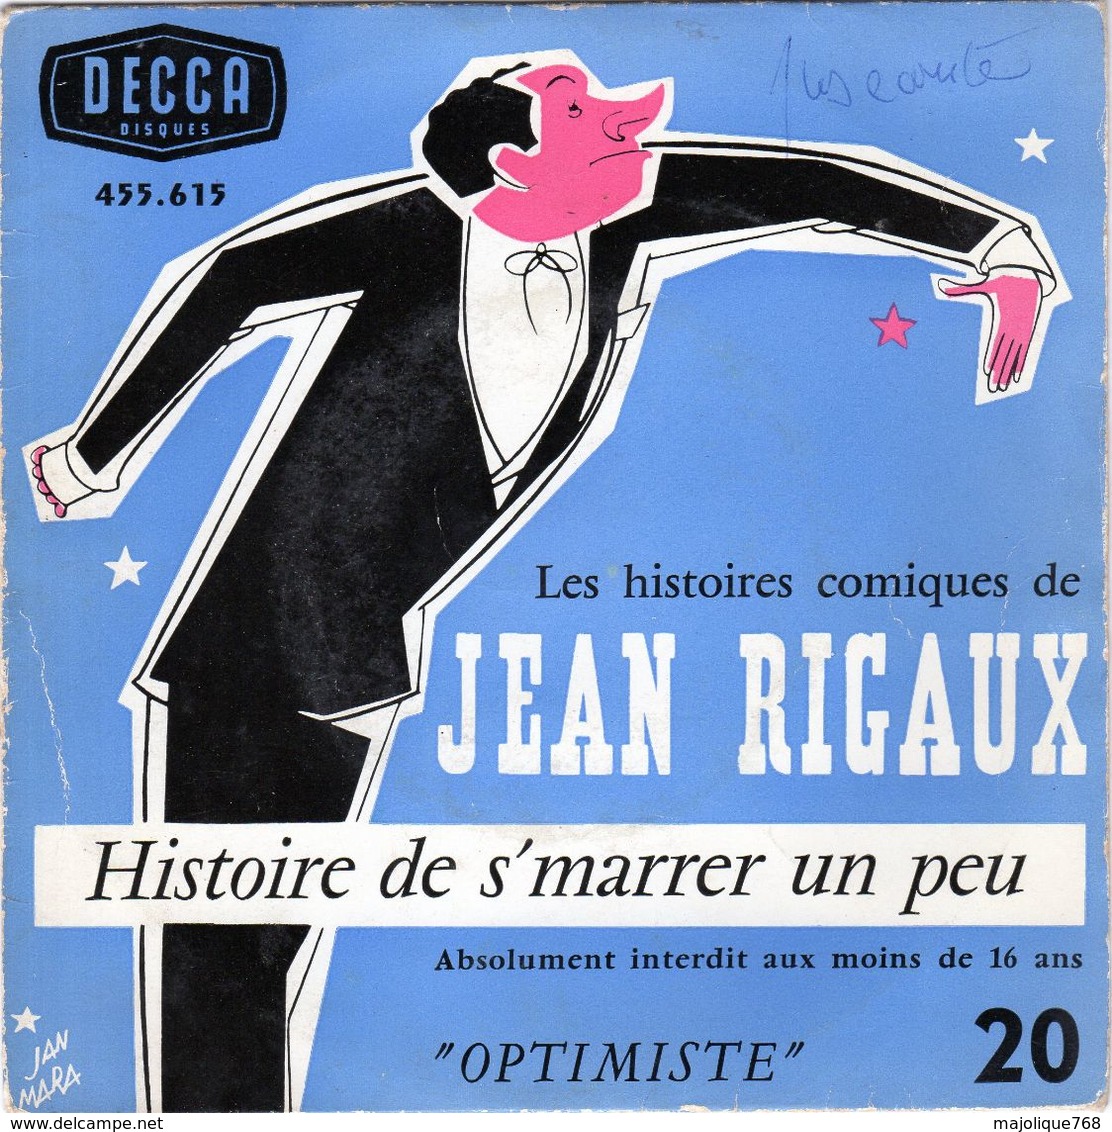 Disque - Jean Rigaux Optimiste N°20 - Histoire De S'marrer Un Peu - DECCA 455.615 - - Humour, Cabaret